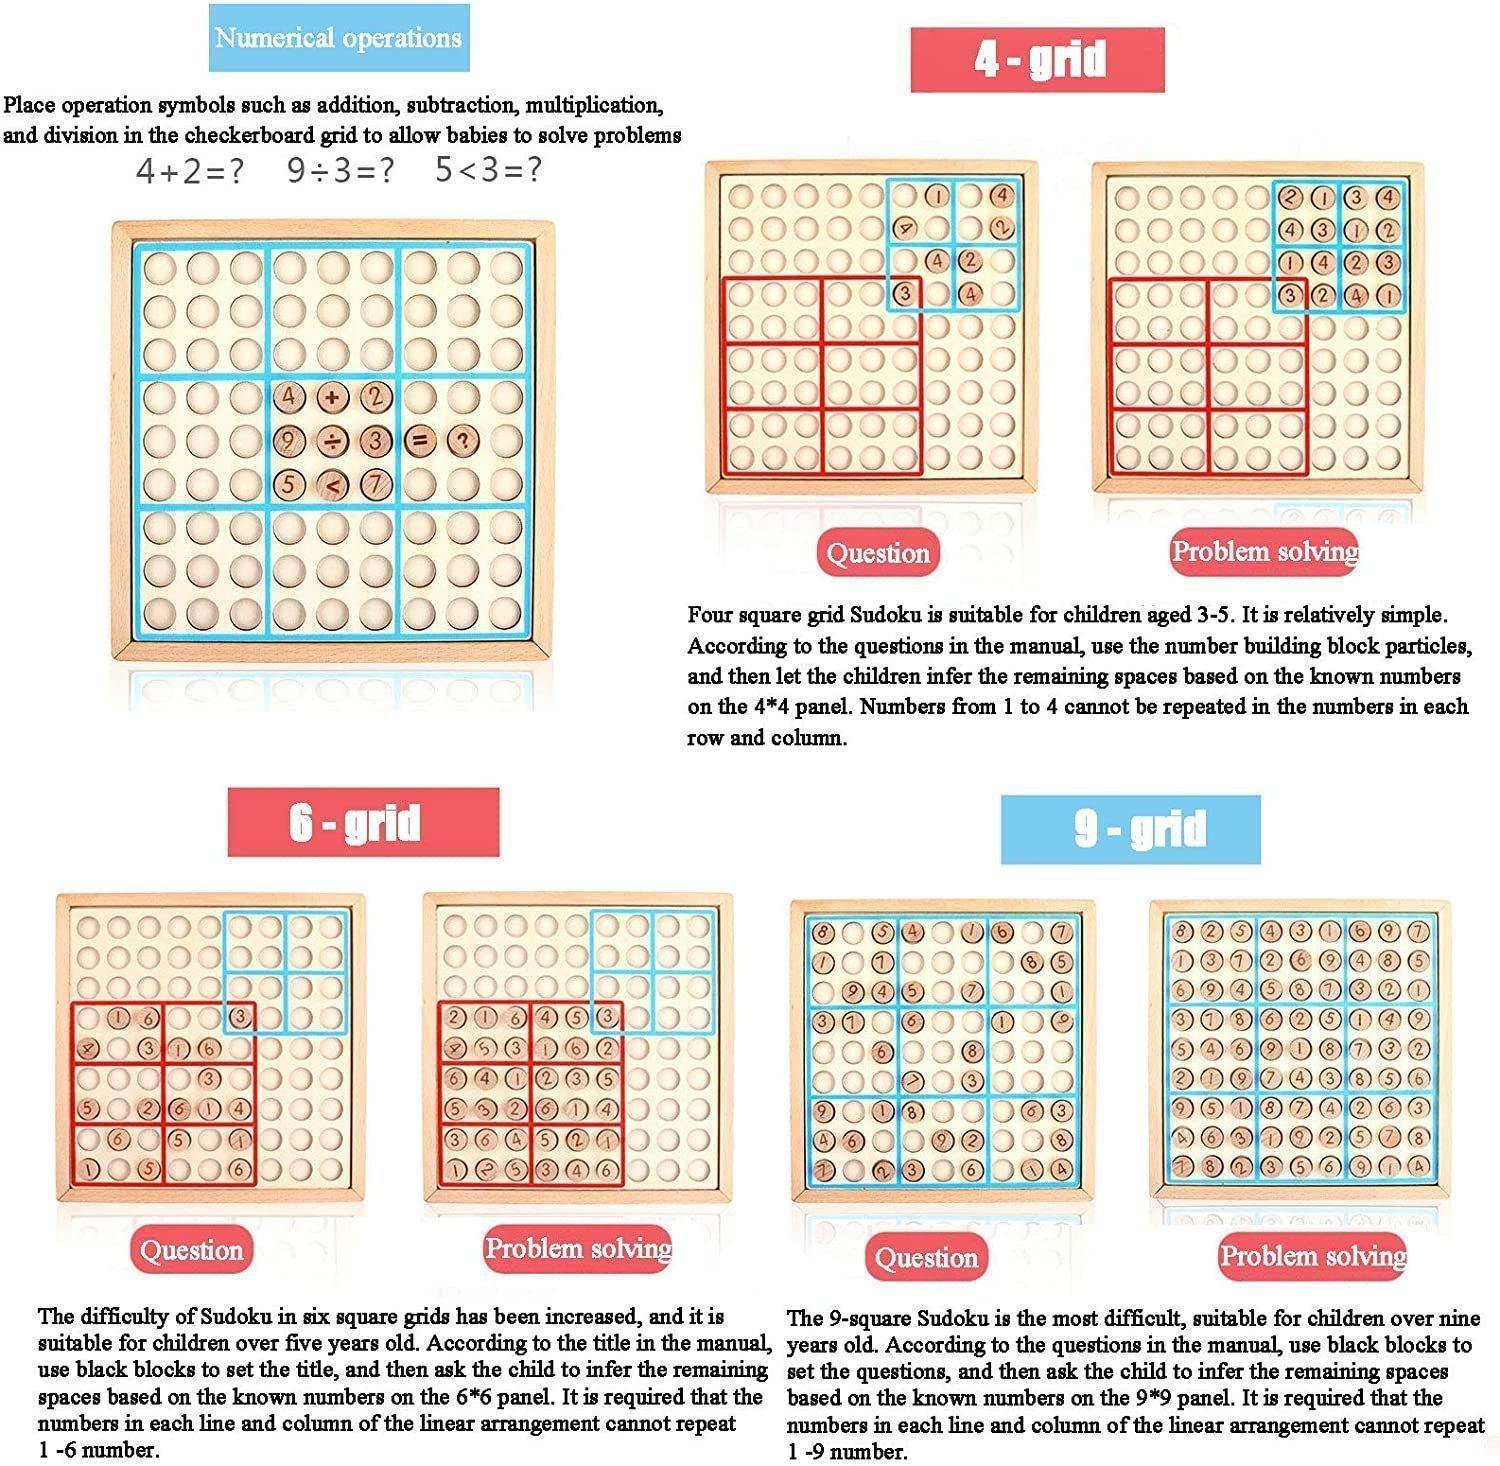 Zabawka Sudoku Dla Dzieci 4 W 1 - pellelife